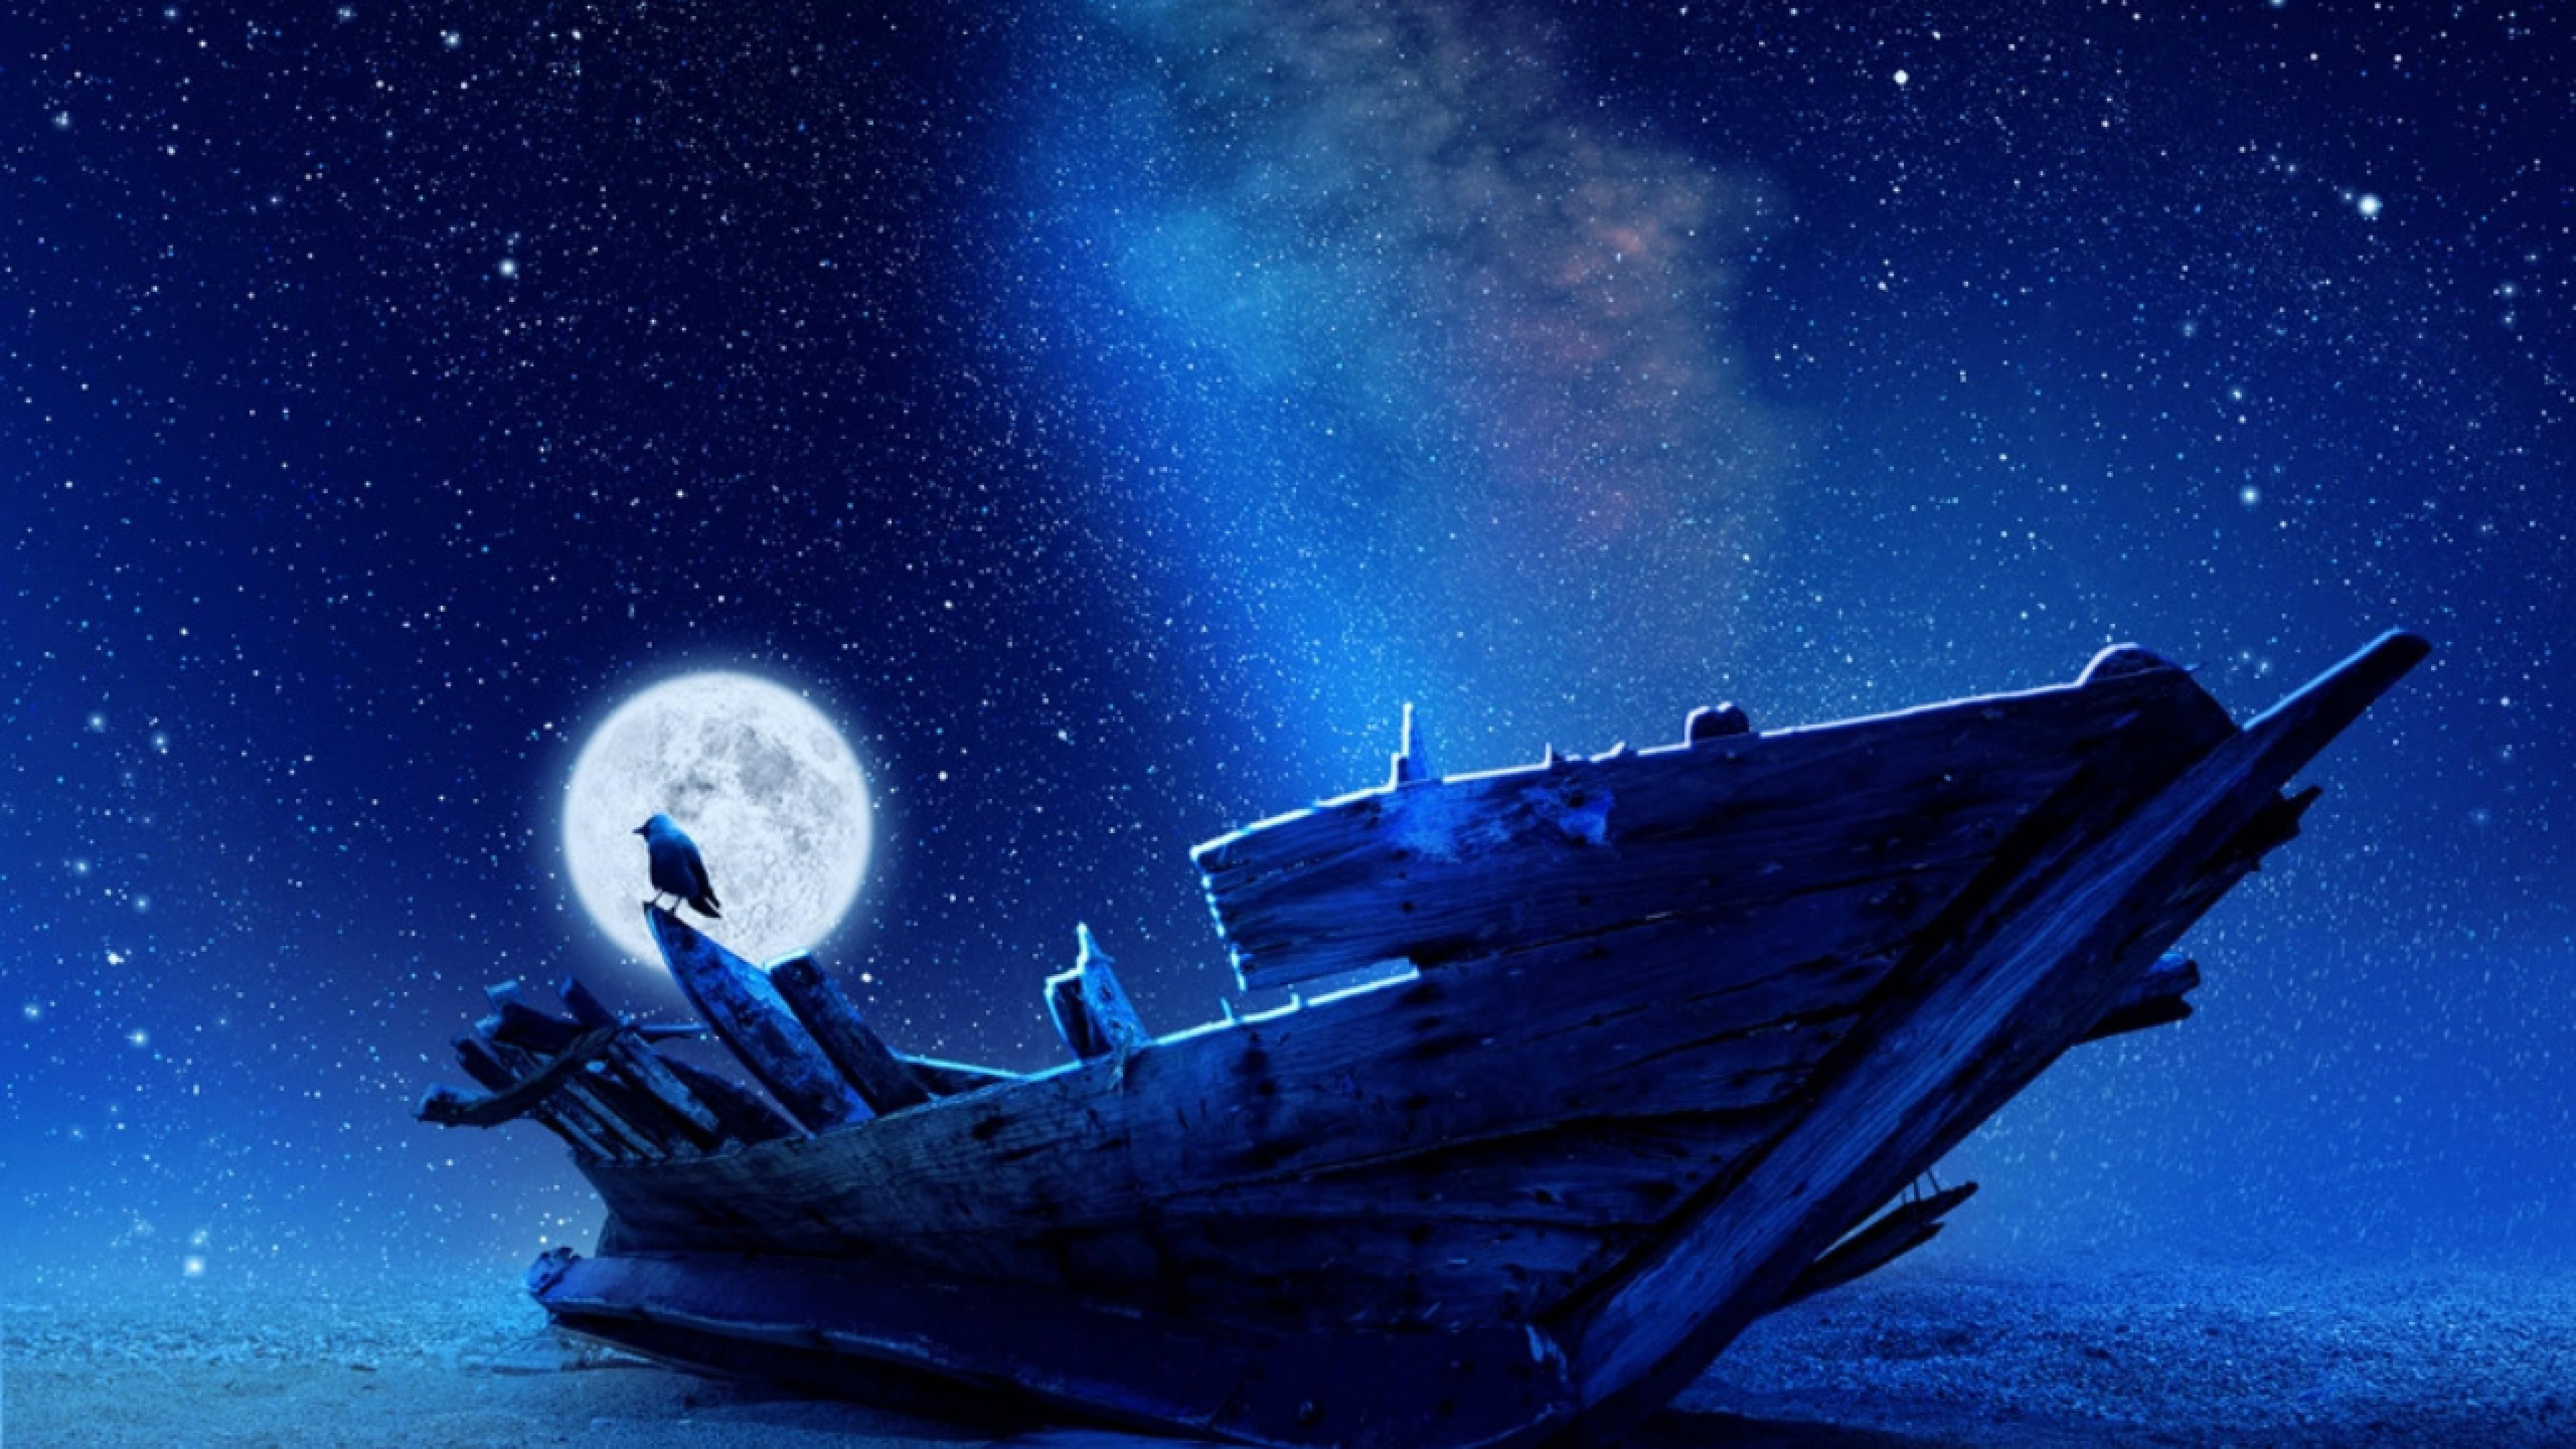 full moon, stars, night, old ship, sea, bird